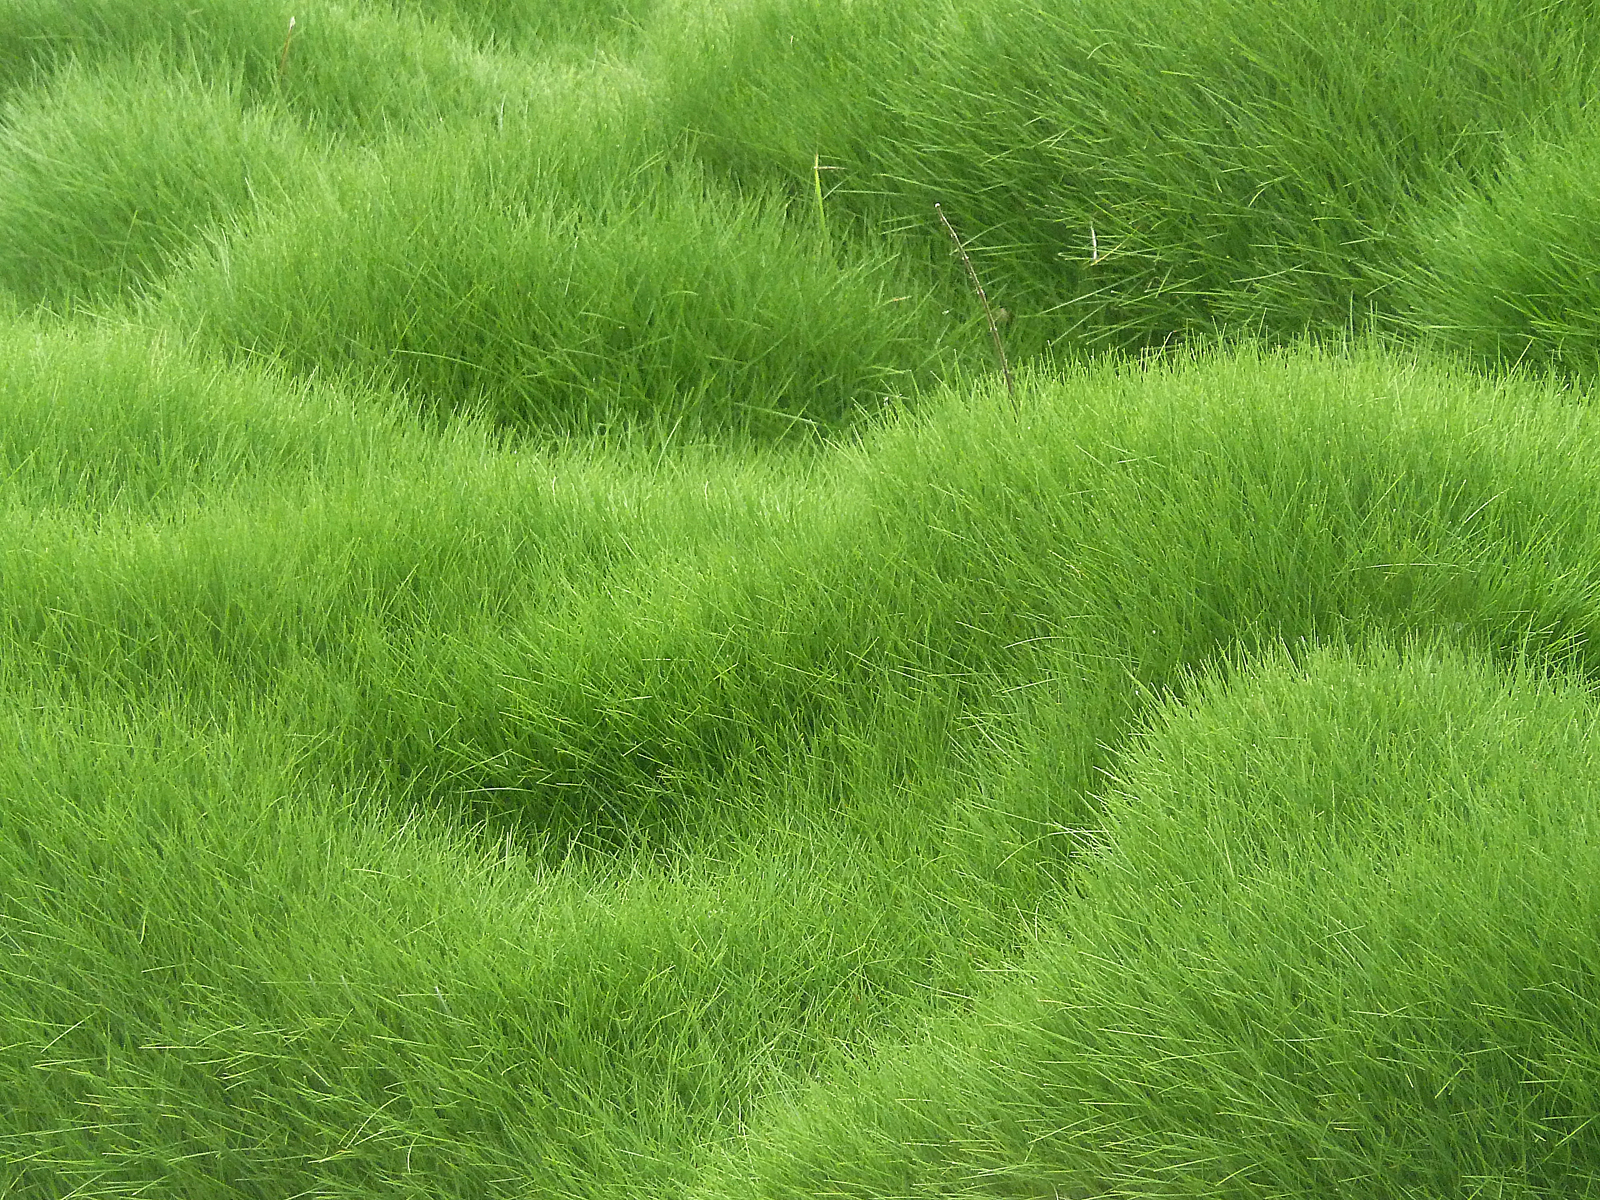 Grassy Background.